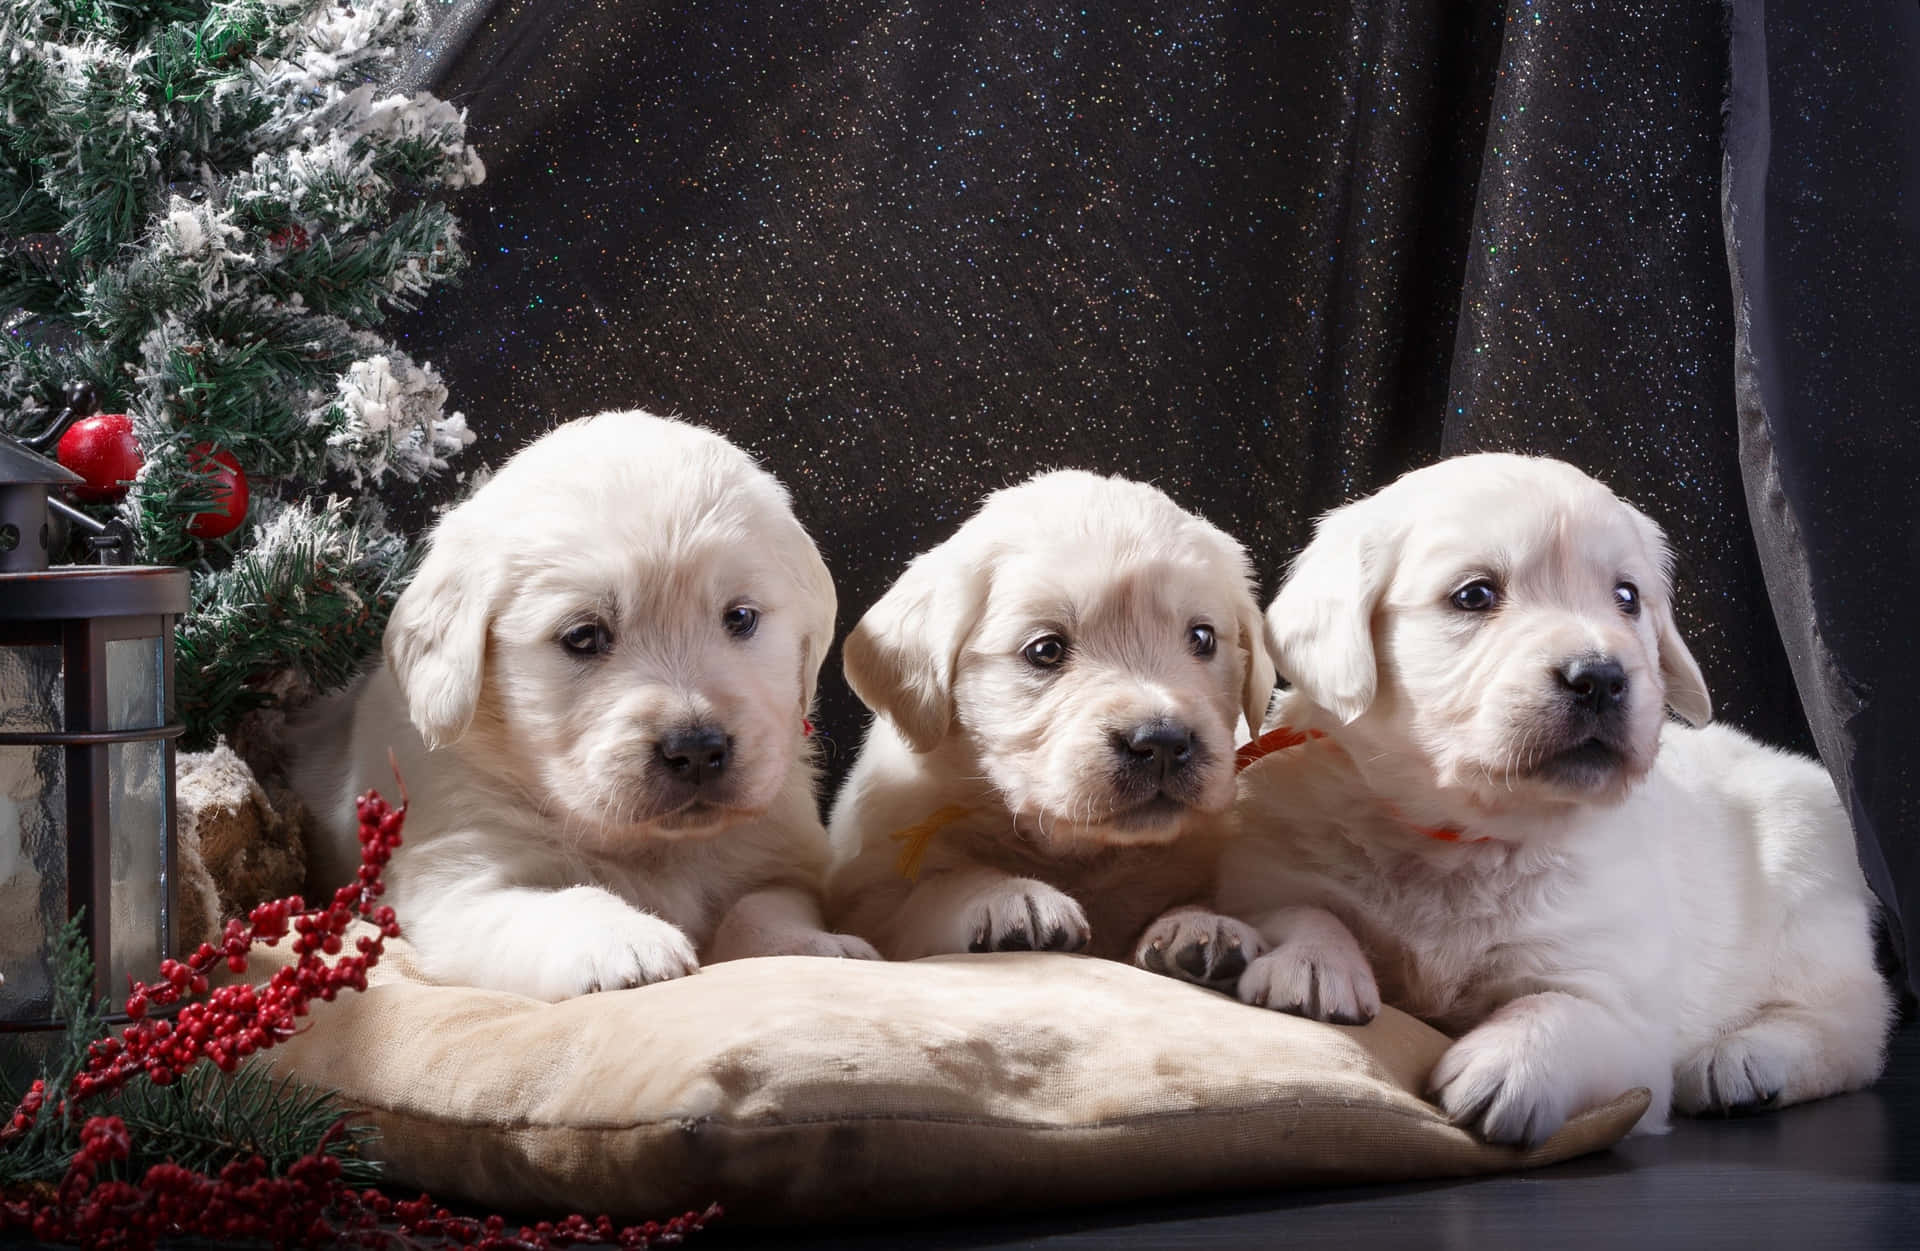 Trecuccioli Di Labrador Nella Foto Dell'albero Di Natale.